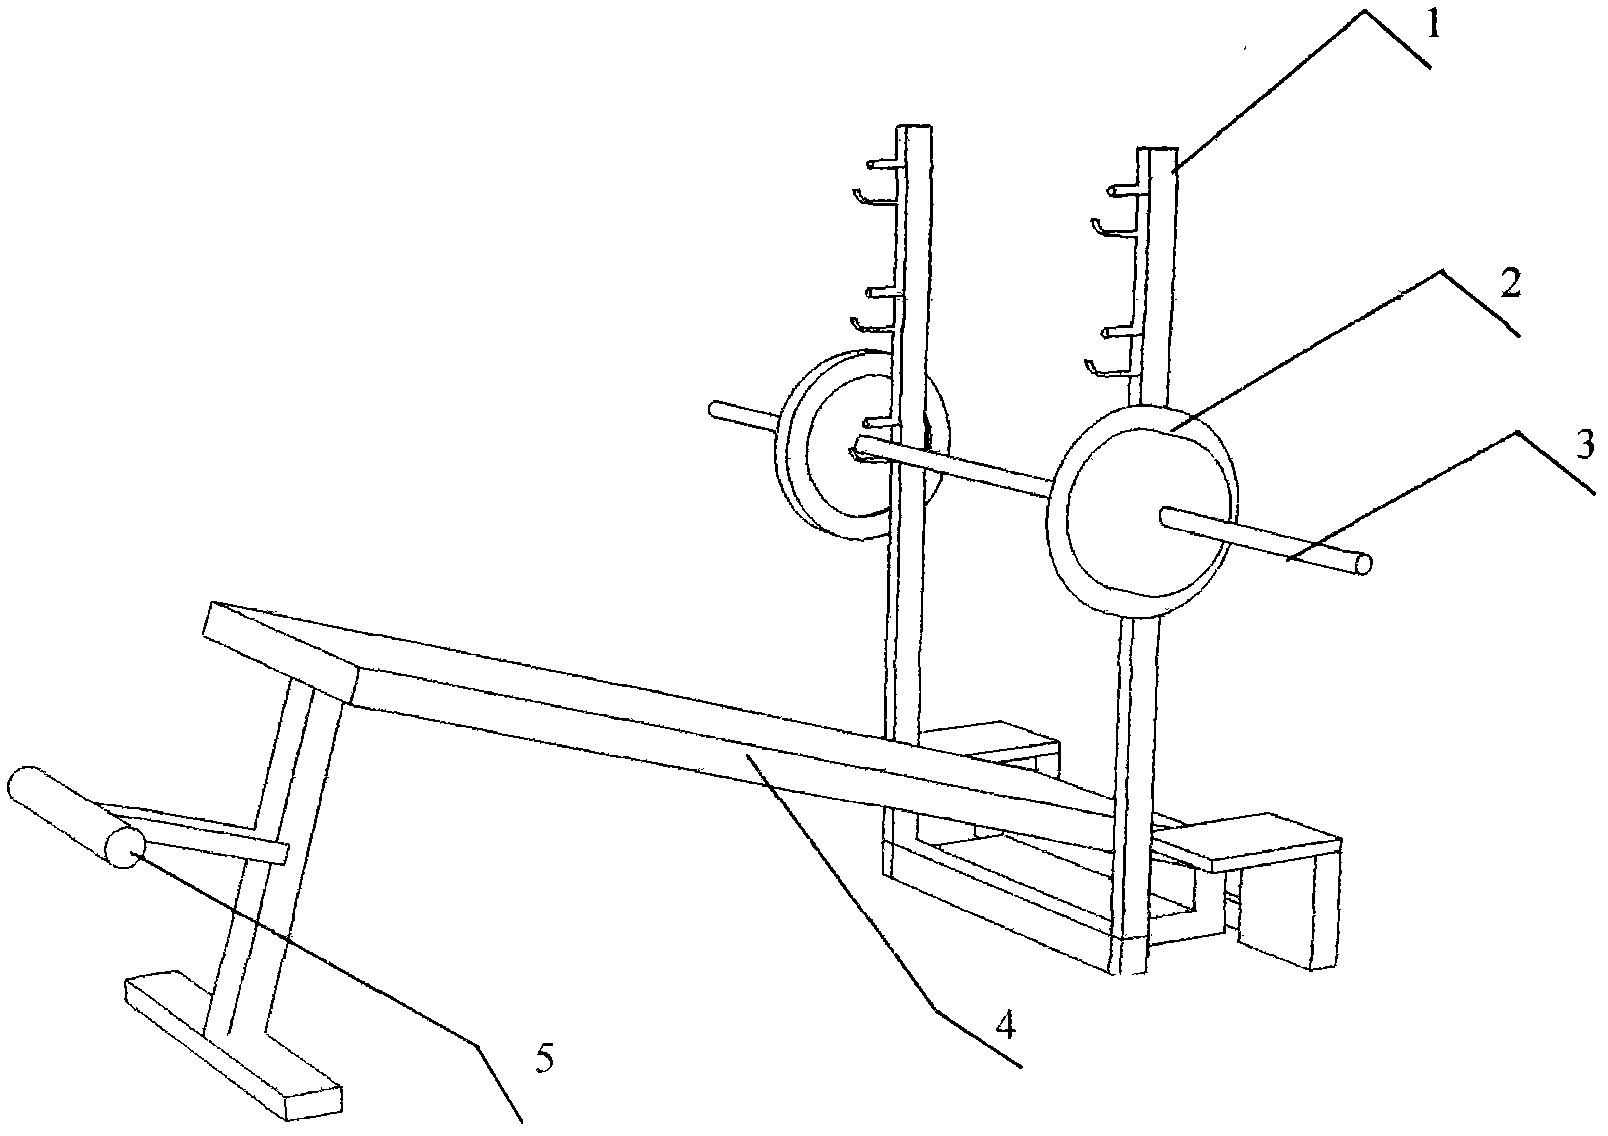 Back-lying thrust frame